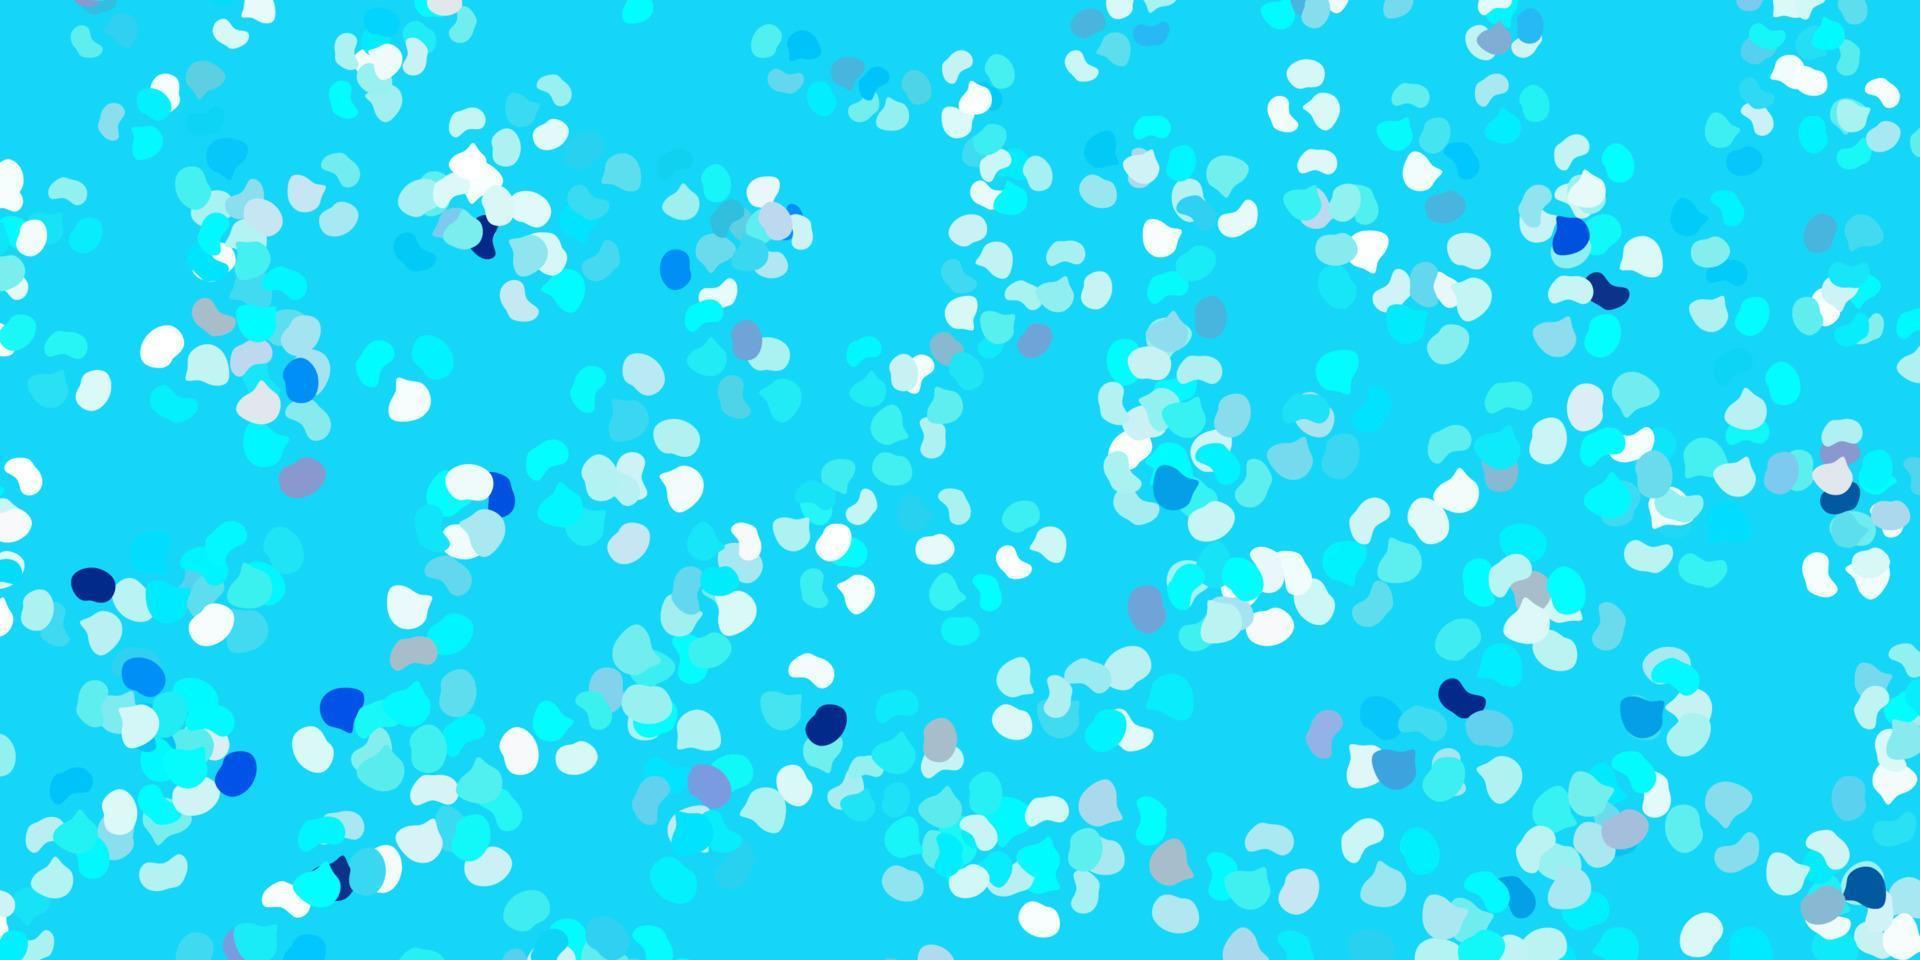 fond de vecteur bleu clair avec des formes aléatoires.